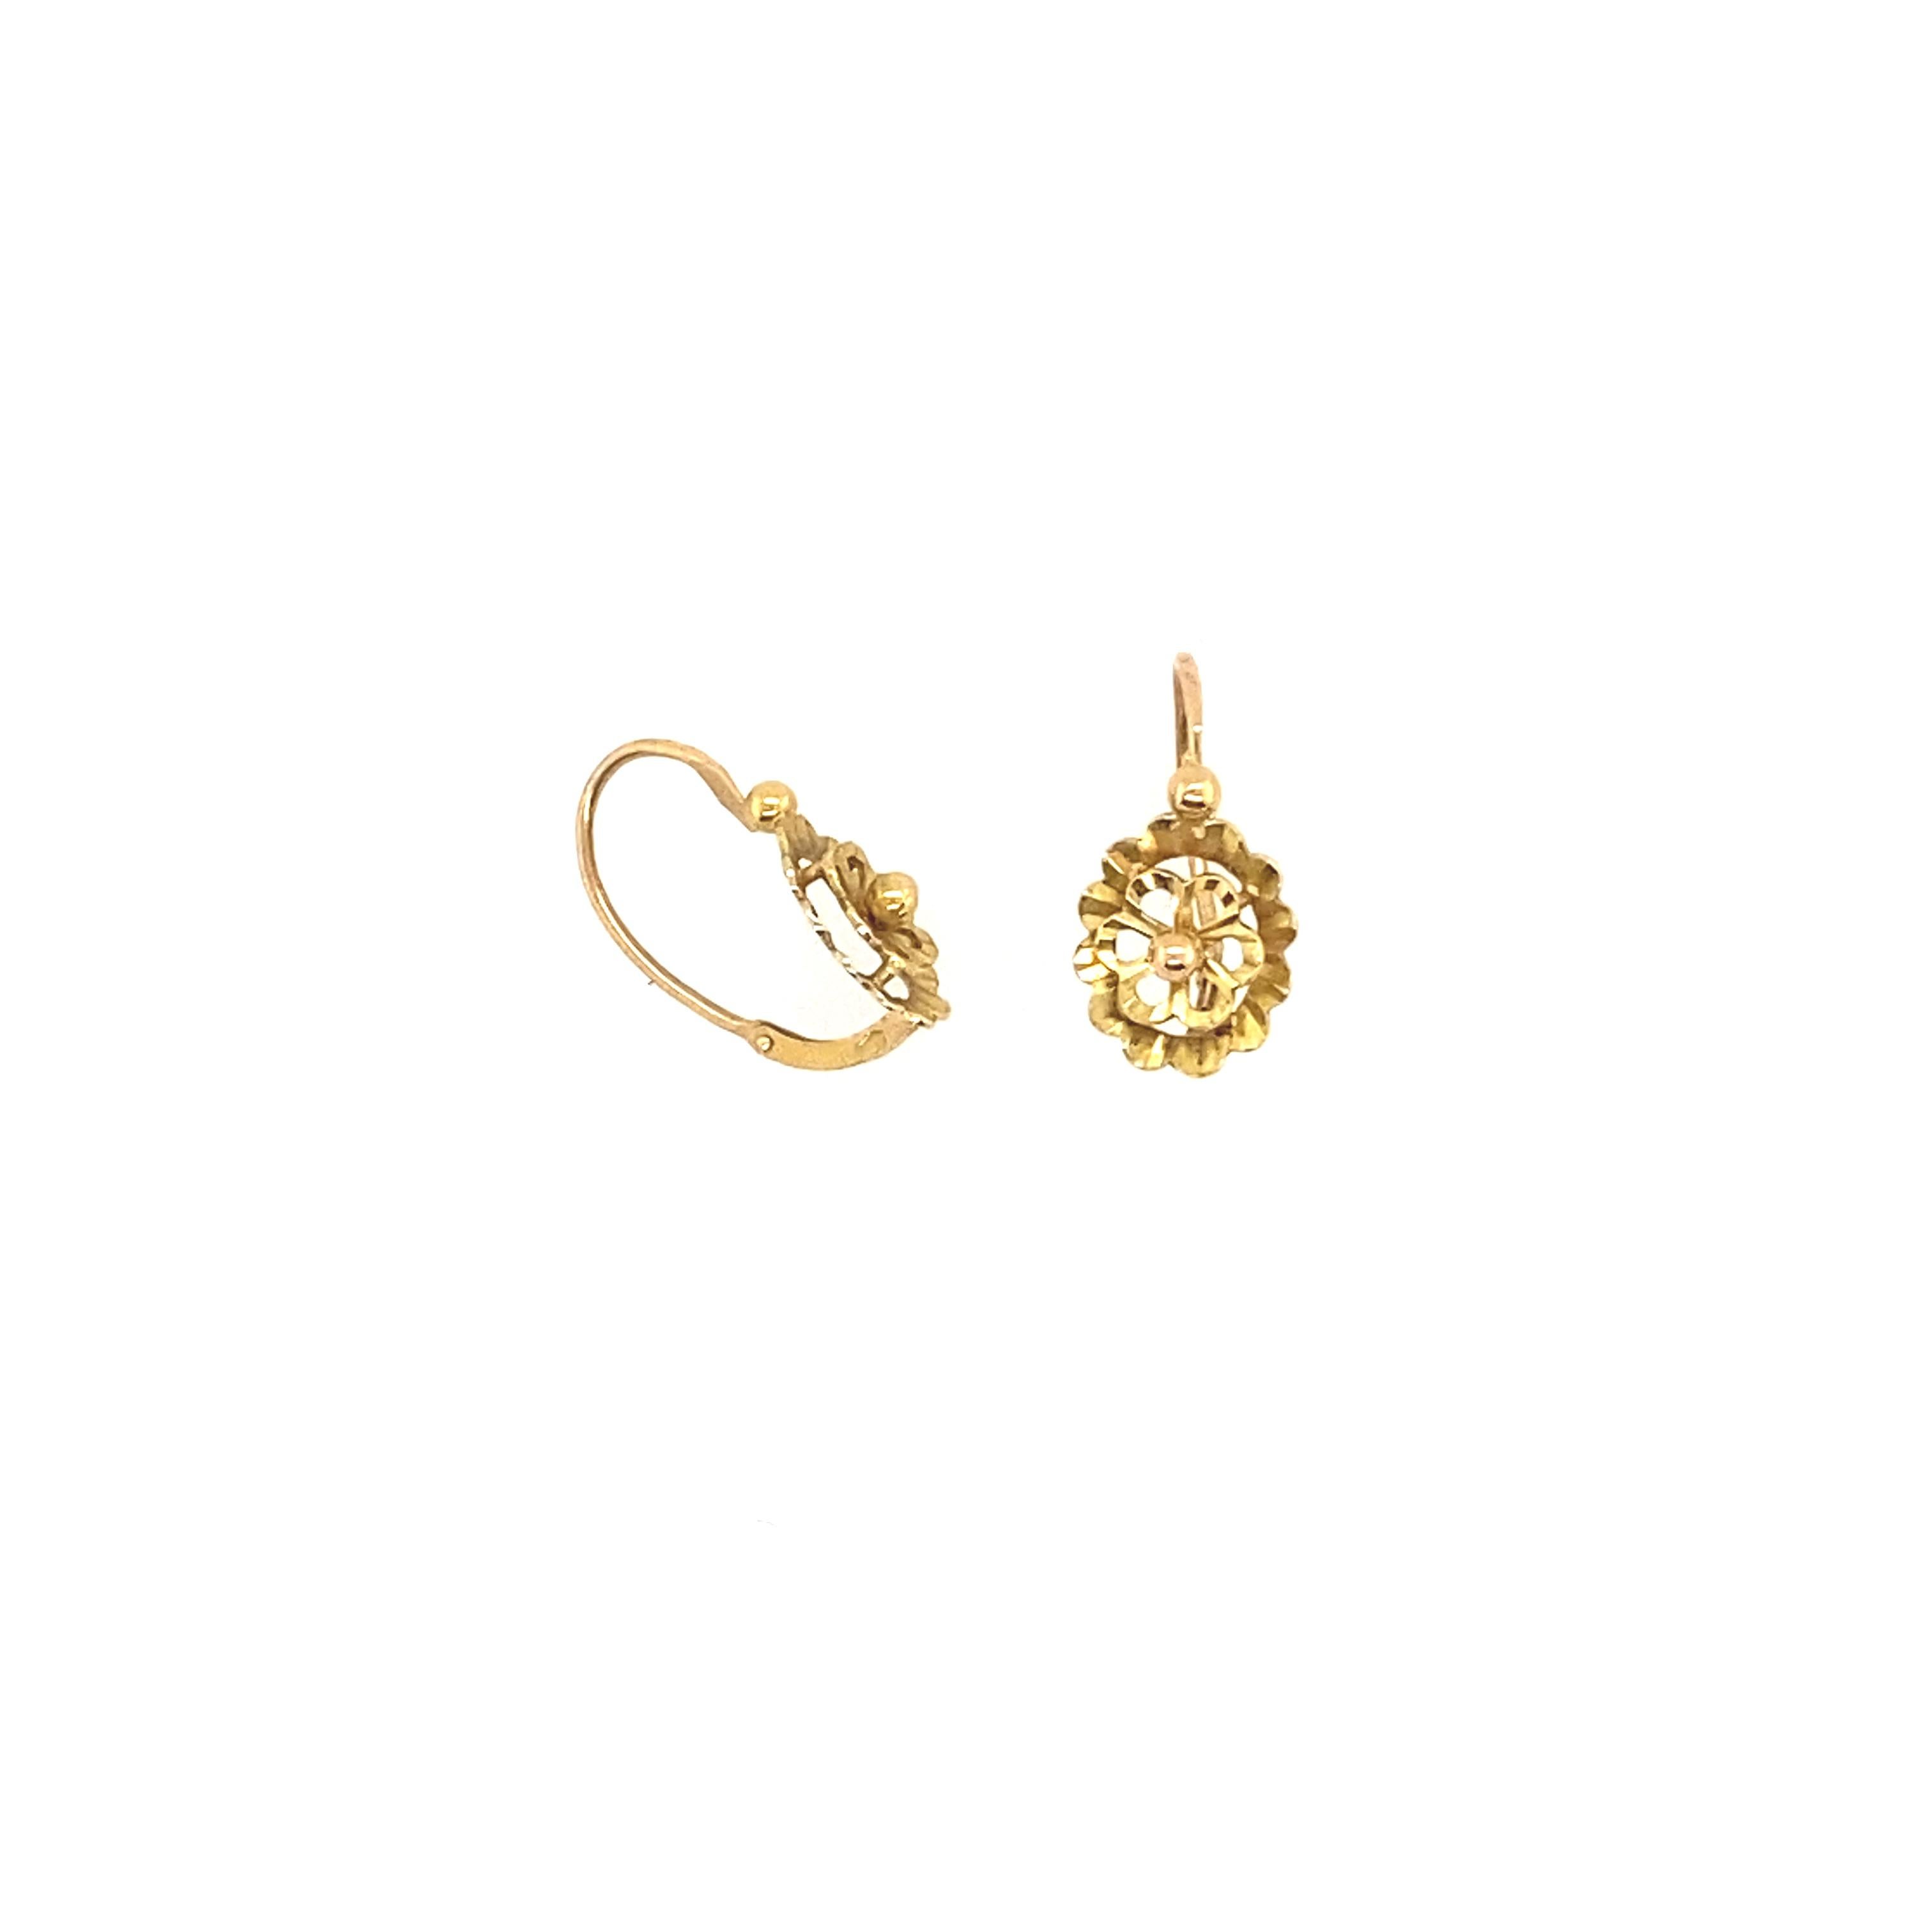 Wir freuen uns, Ihnen dieses elegante Paar französischer Dormeur-Ohrringe aus 18-karätigem Gold präsentieren zu können, die Ihrem Stil einen Hauch von Raffinesse verleihen.

Diese Dormeur-Ohrringe aus 18 Karat Gold sind außergewöhnliche